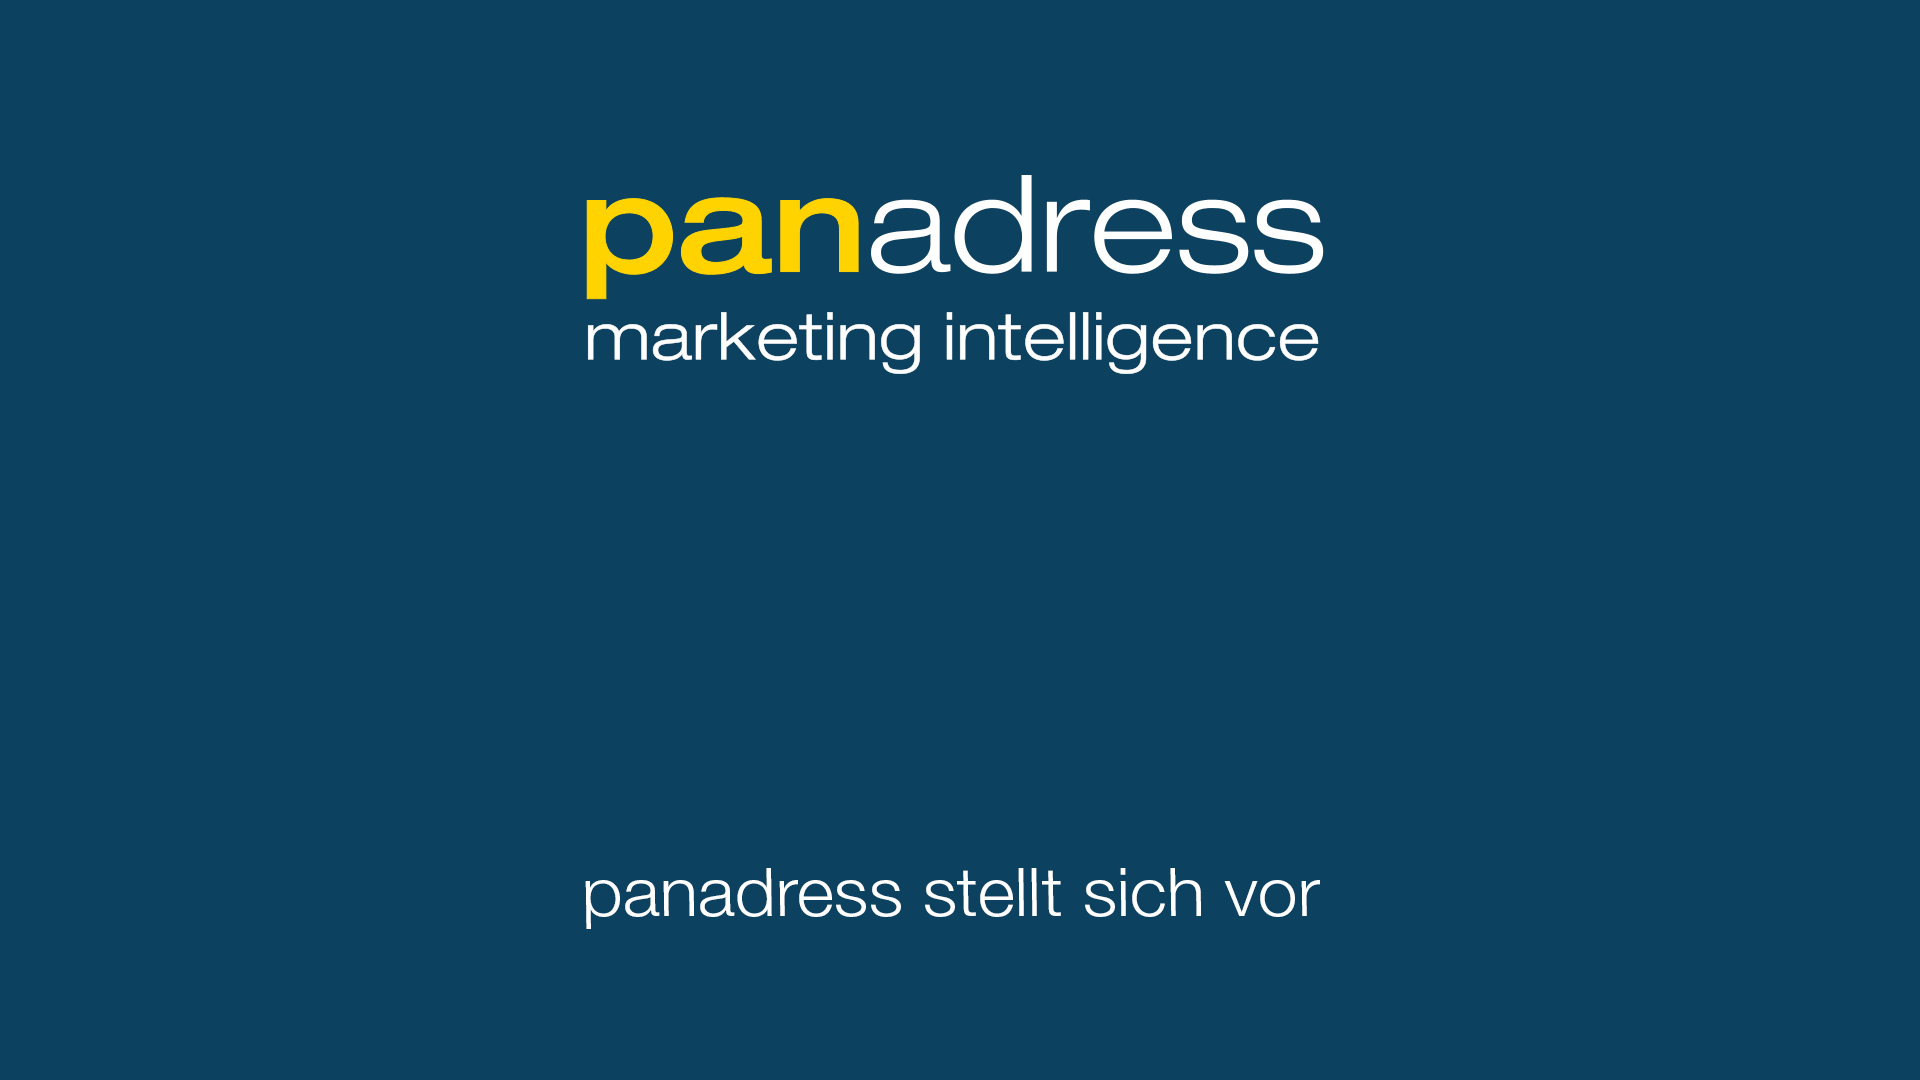 panadress marketing intelligence stellt sich vor